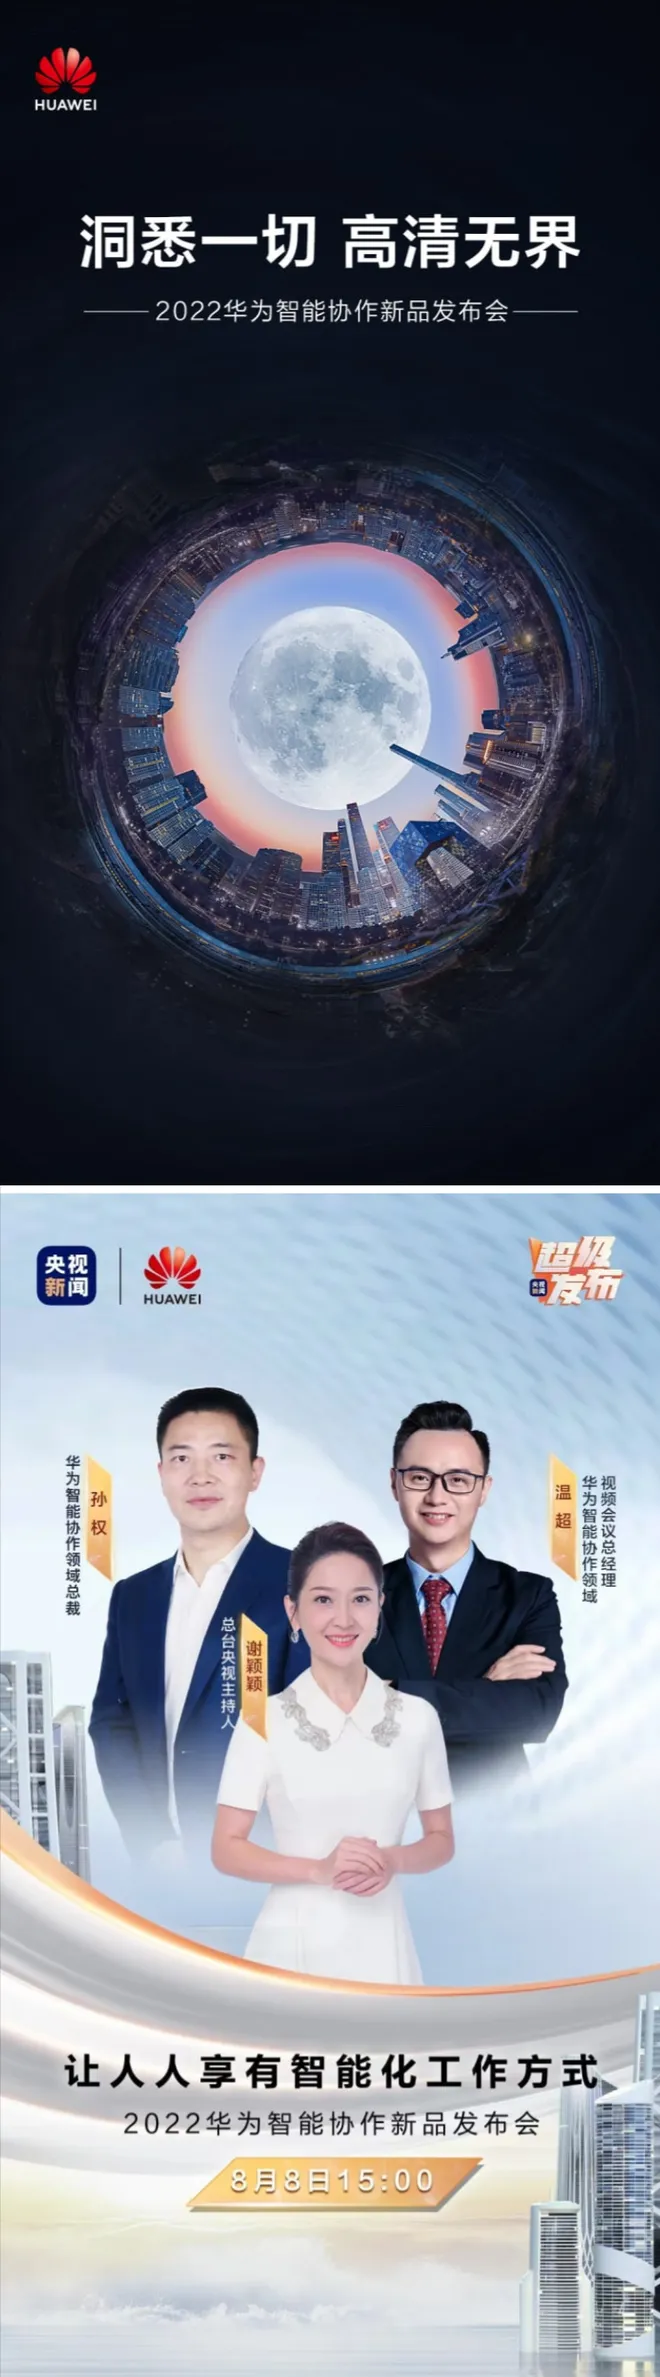 Próximo evento da Huawei acontecerá no dia 8 de agosto (Imagem: Divulgação/Huawei)